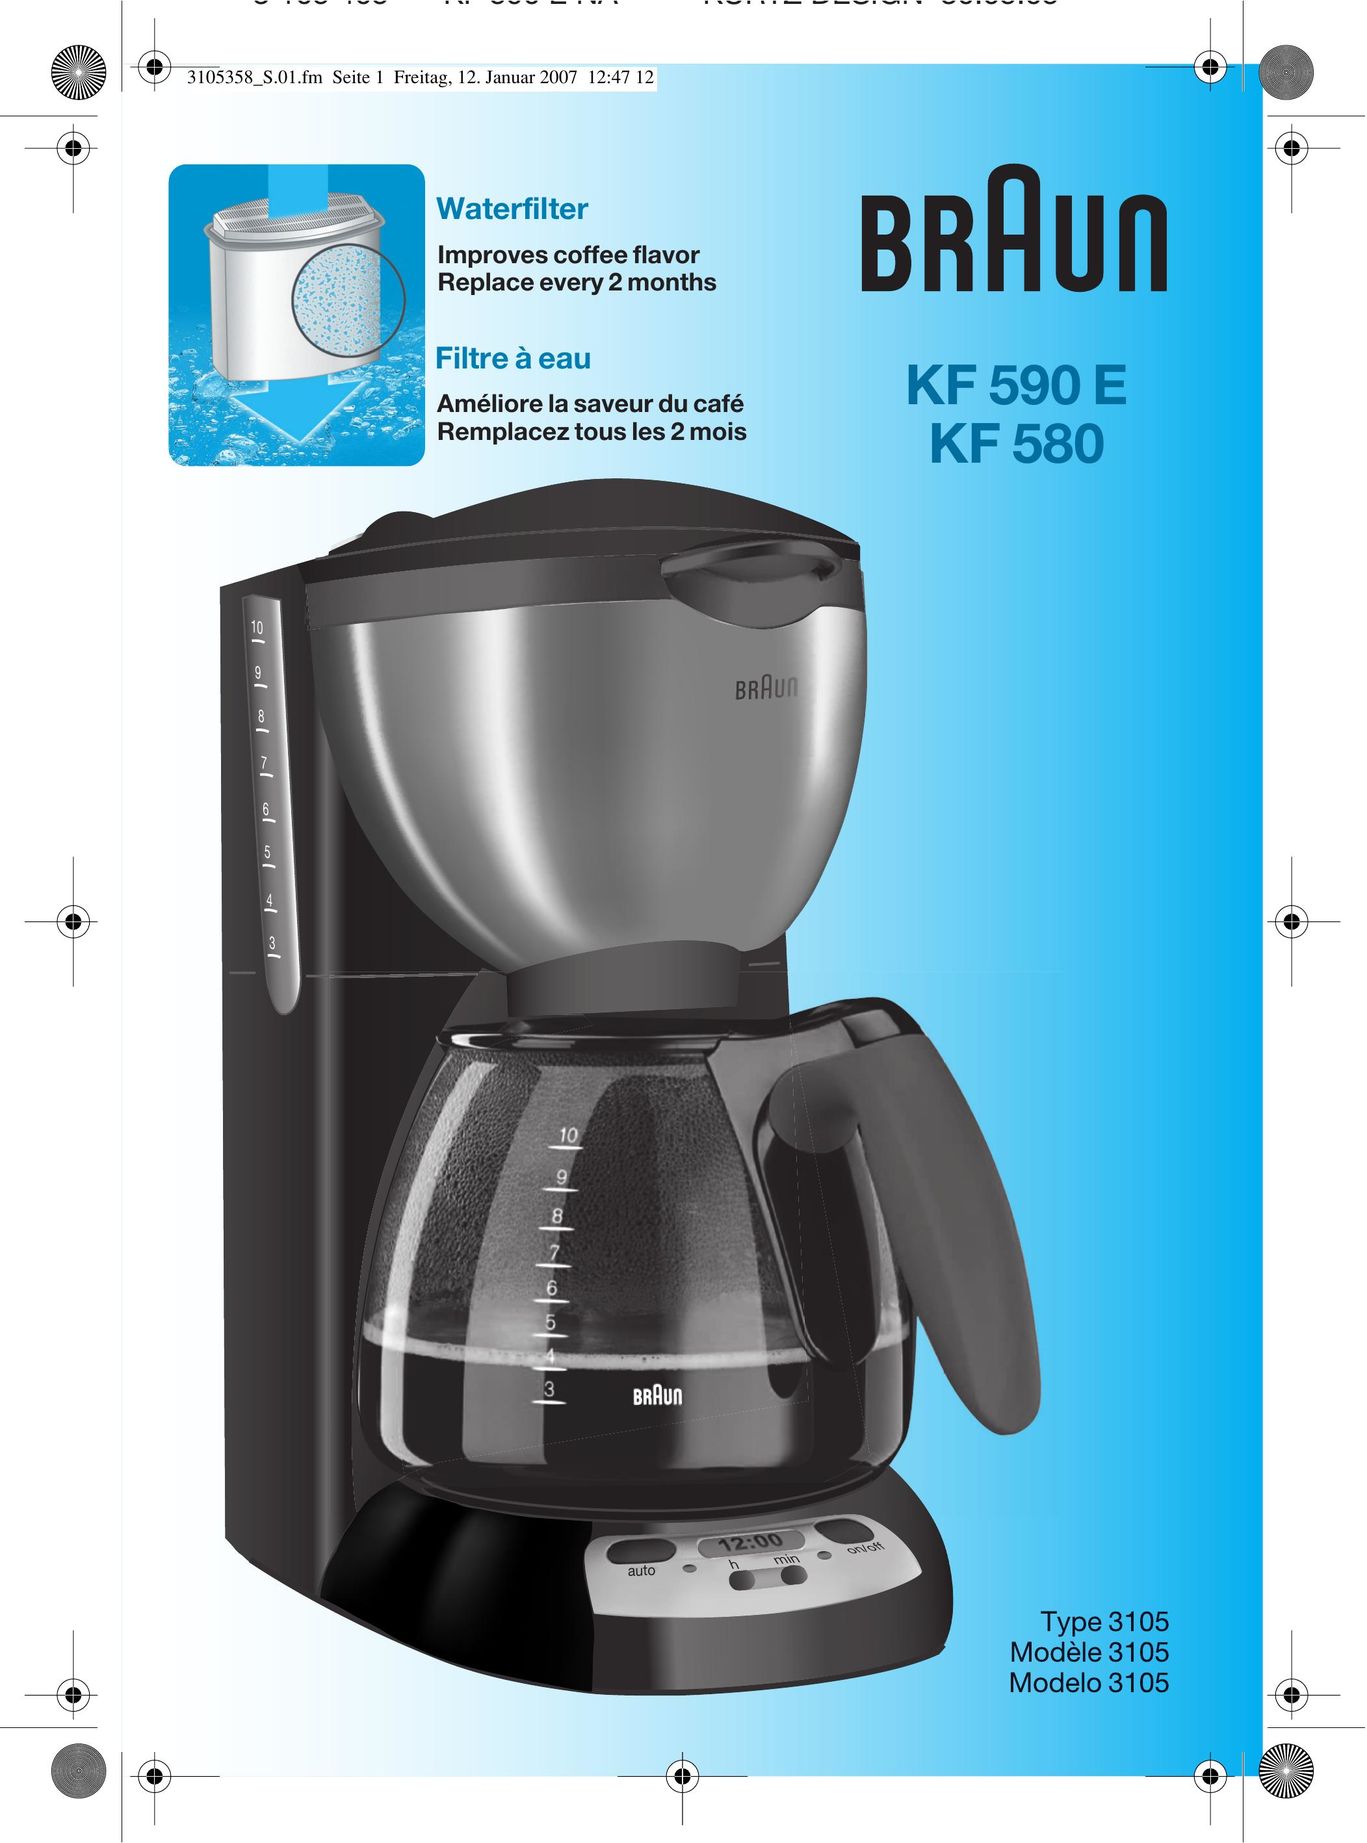 Braun KF590E Coffeemaker User Manual